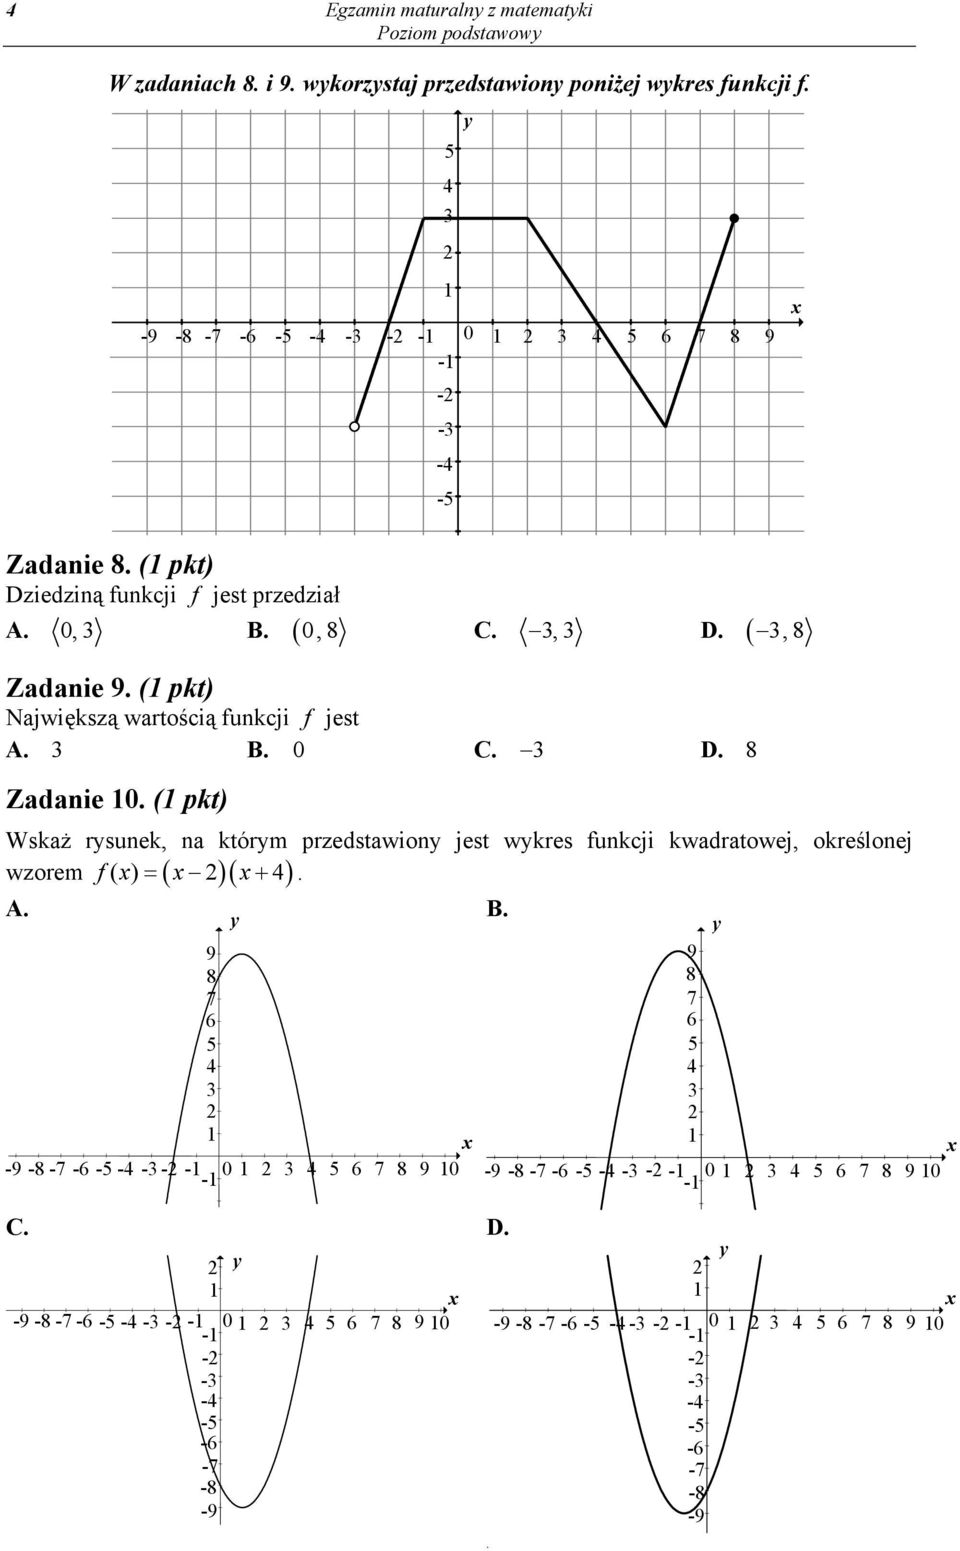 (1 pkt) -9-8 -7-6 -5-4 -3 - -1 0 1 3 4 5 6 7 8 9-1 Wskaż rysunek, na którym przedstawiony jest wykres funkcji kwadratowej, określonej f( x) x x 4. wzorem.